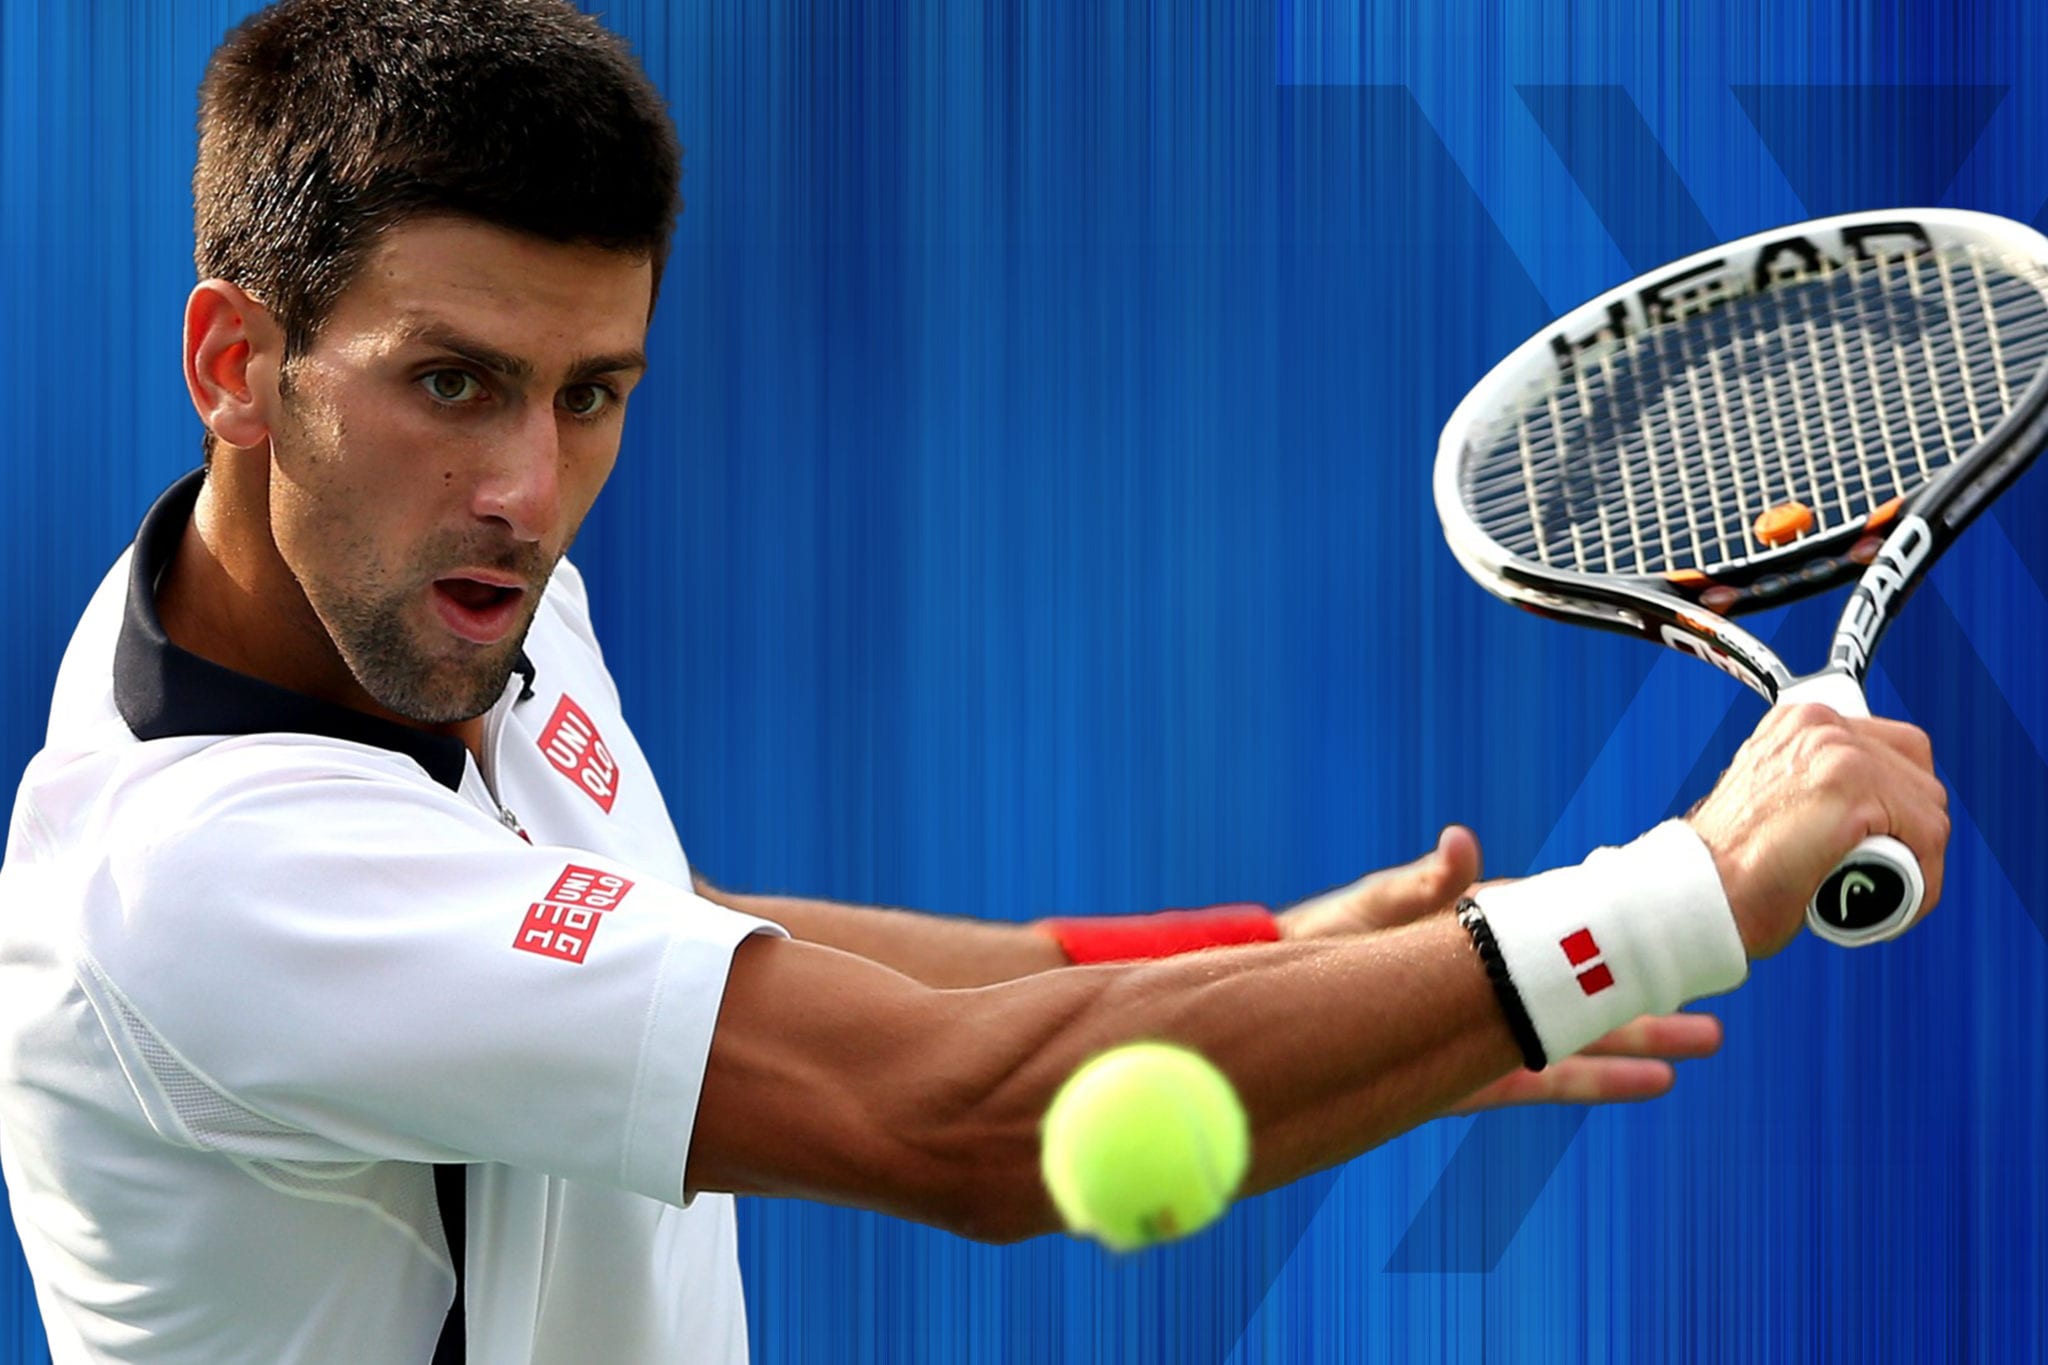 What Watch Does Novak Djokovic Wear?